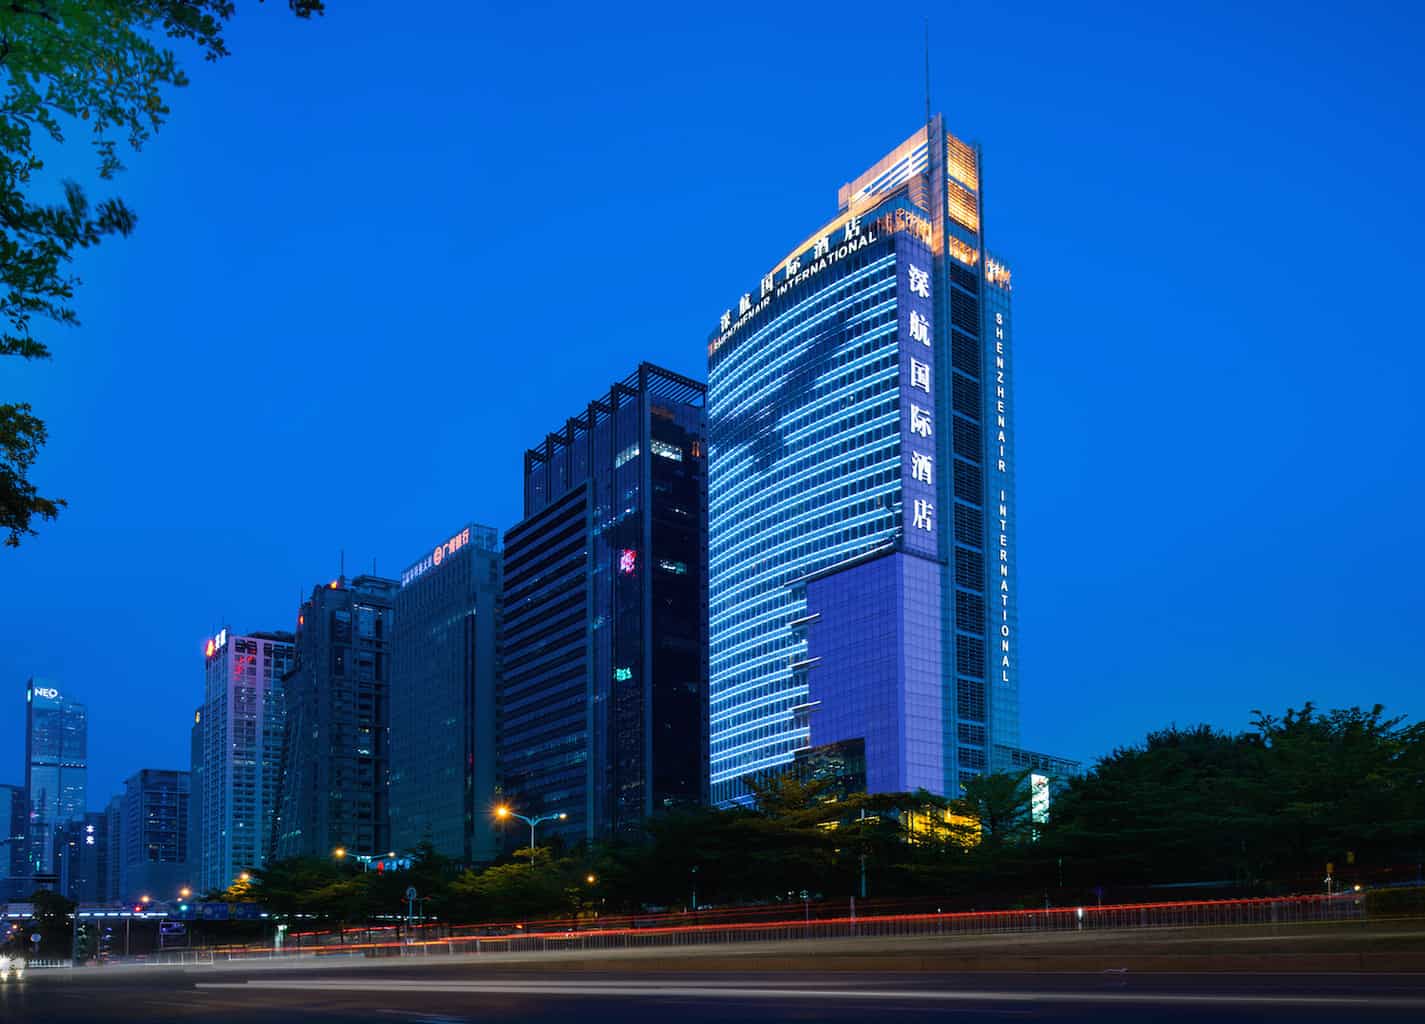 Featured image for “Shenzhenair International Hotel Shenzhen”